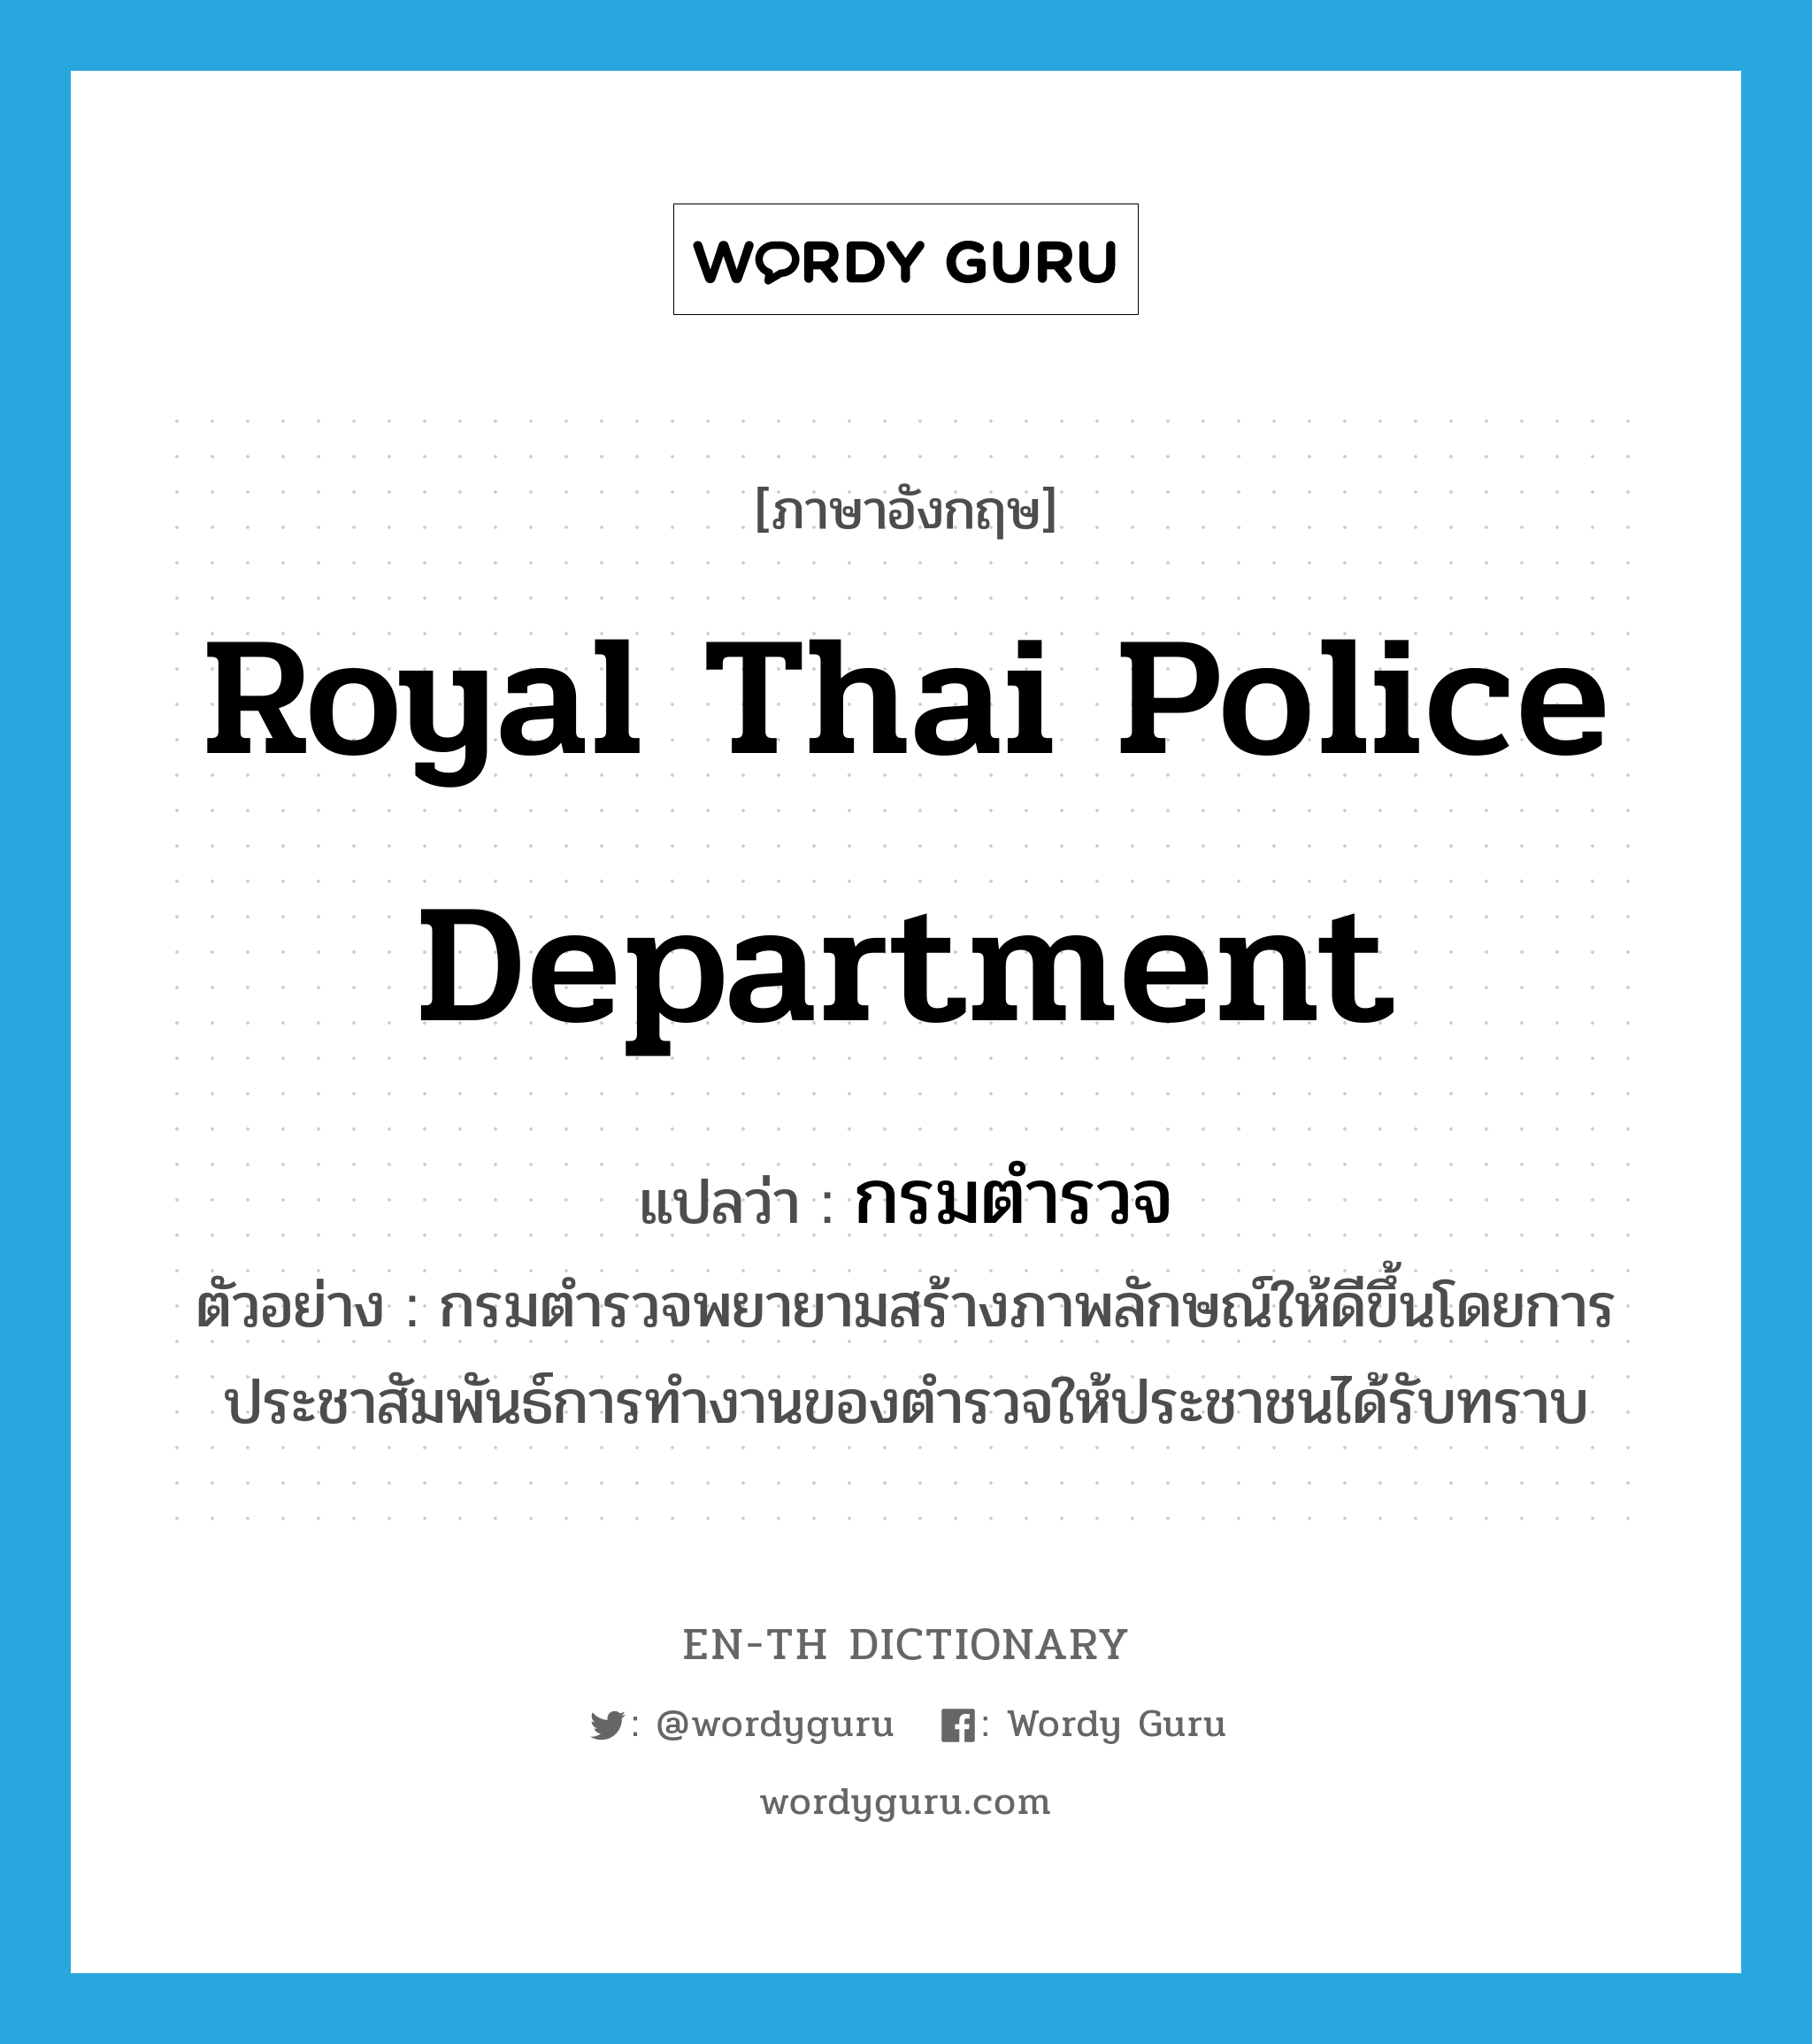 Royal Thai Police Department แปลว่า?, คำศัพท์ภาษาอังกฤษ Royal Thai Police Department แปลว่า กรมตำรวจ ประเภท N ตัวอย่าง กรมตำรวจพยายามสร้างภาพลักษณ์ให้ดีขึ้นโดยการประชาสัมพันธ์การทำงานของตำรวจให้ประชาชนได้รับทราบ หมวด N